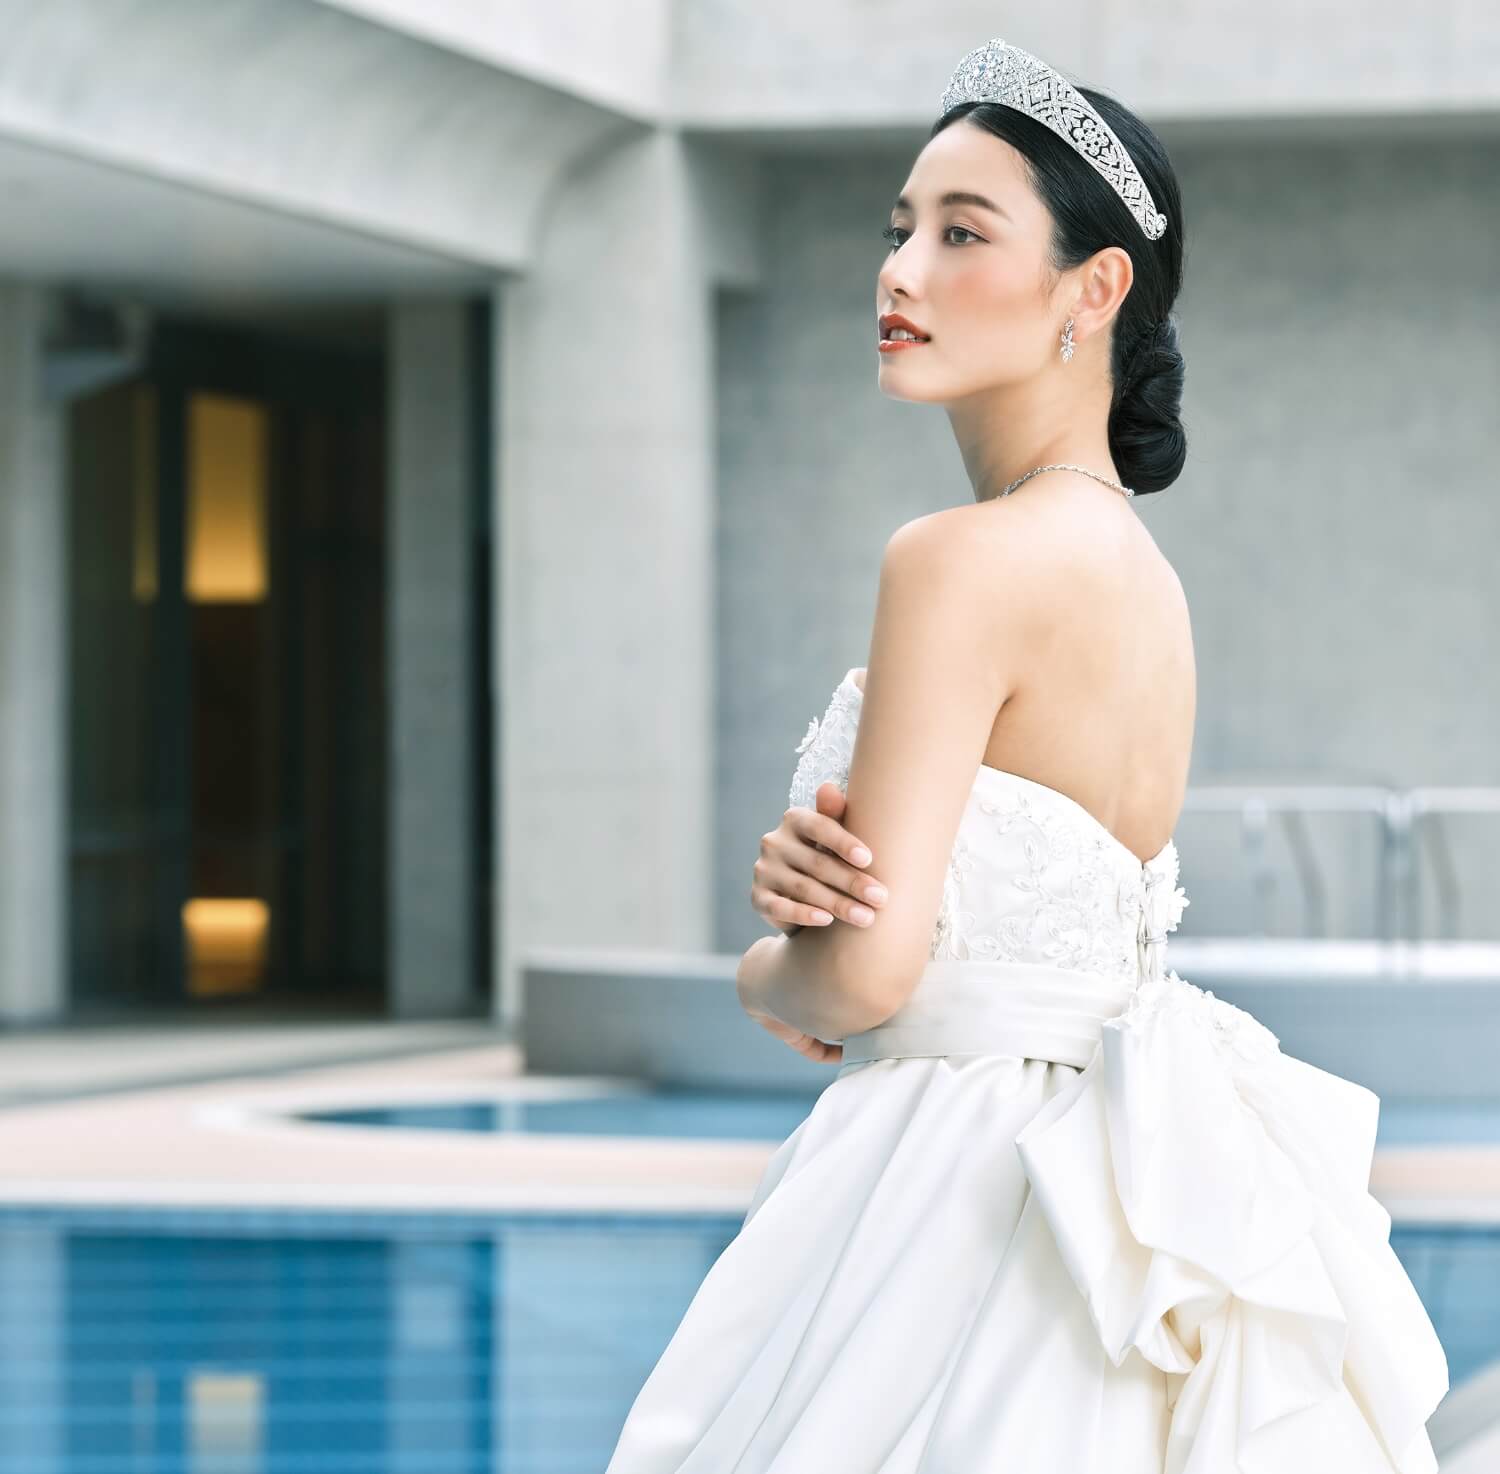 DRESS – 海外ブランドの純白・クラシカルなウエディングドレスなら神戸元町のウエディングサロンイノウエ